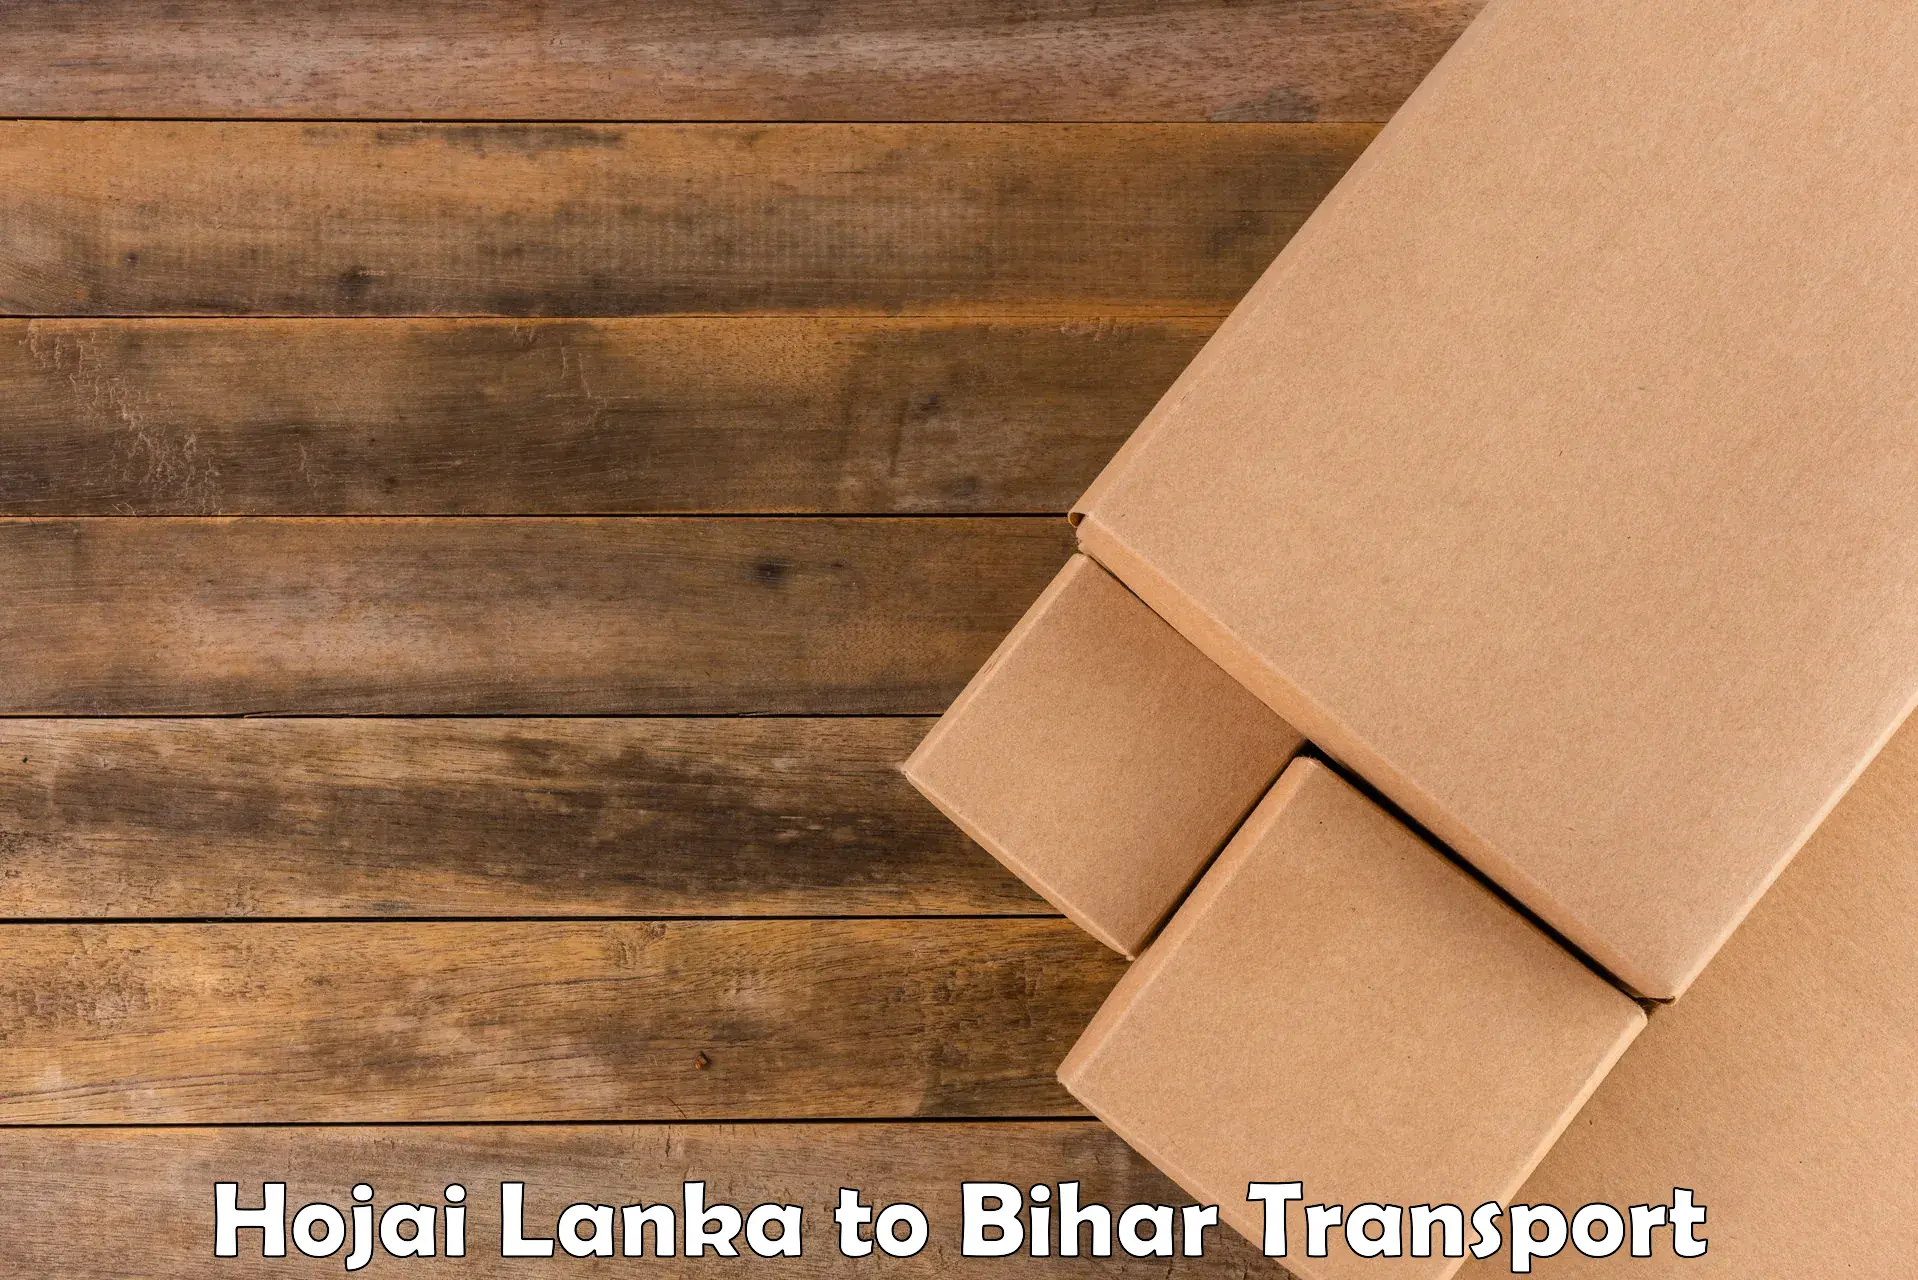 Daily parcel service transport Hojai Lanka to Naugachhia